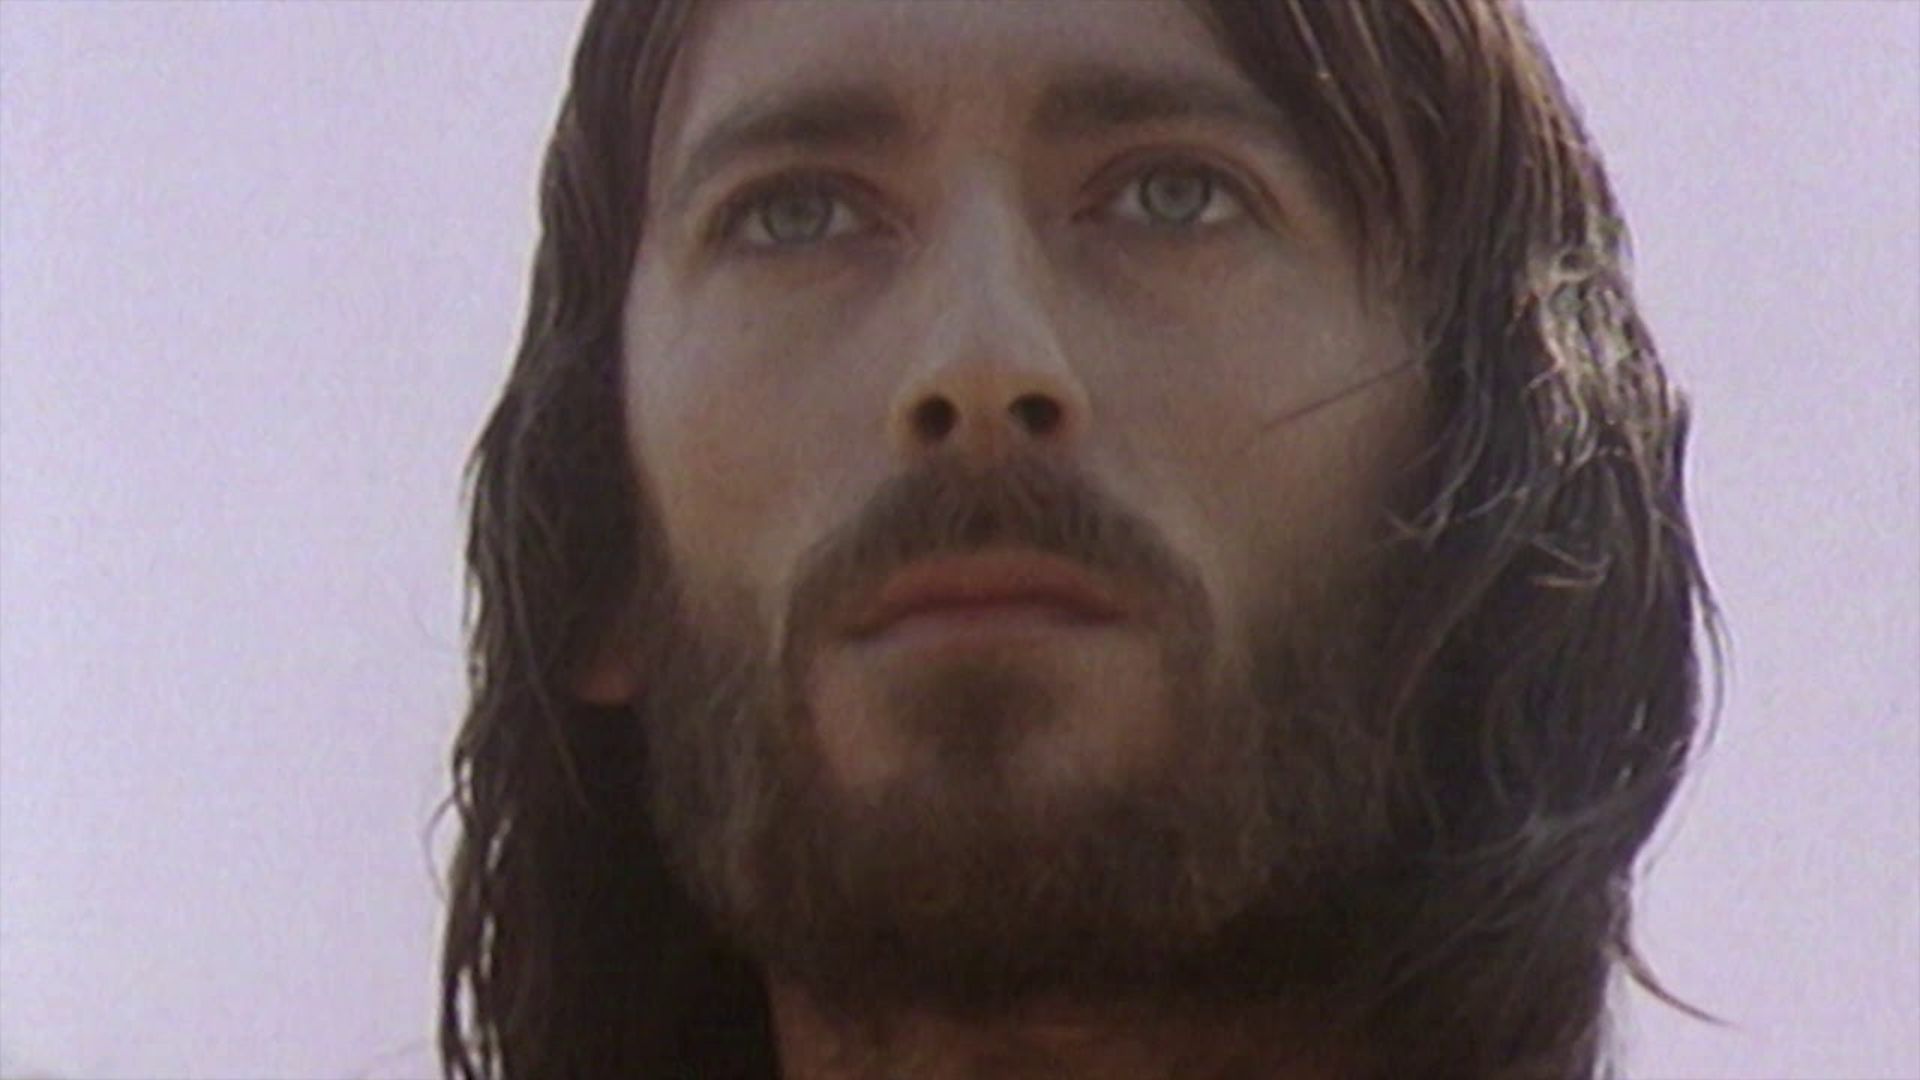 I migliori film su Gesù cristo pasqua